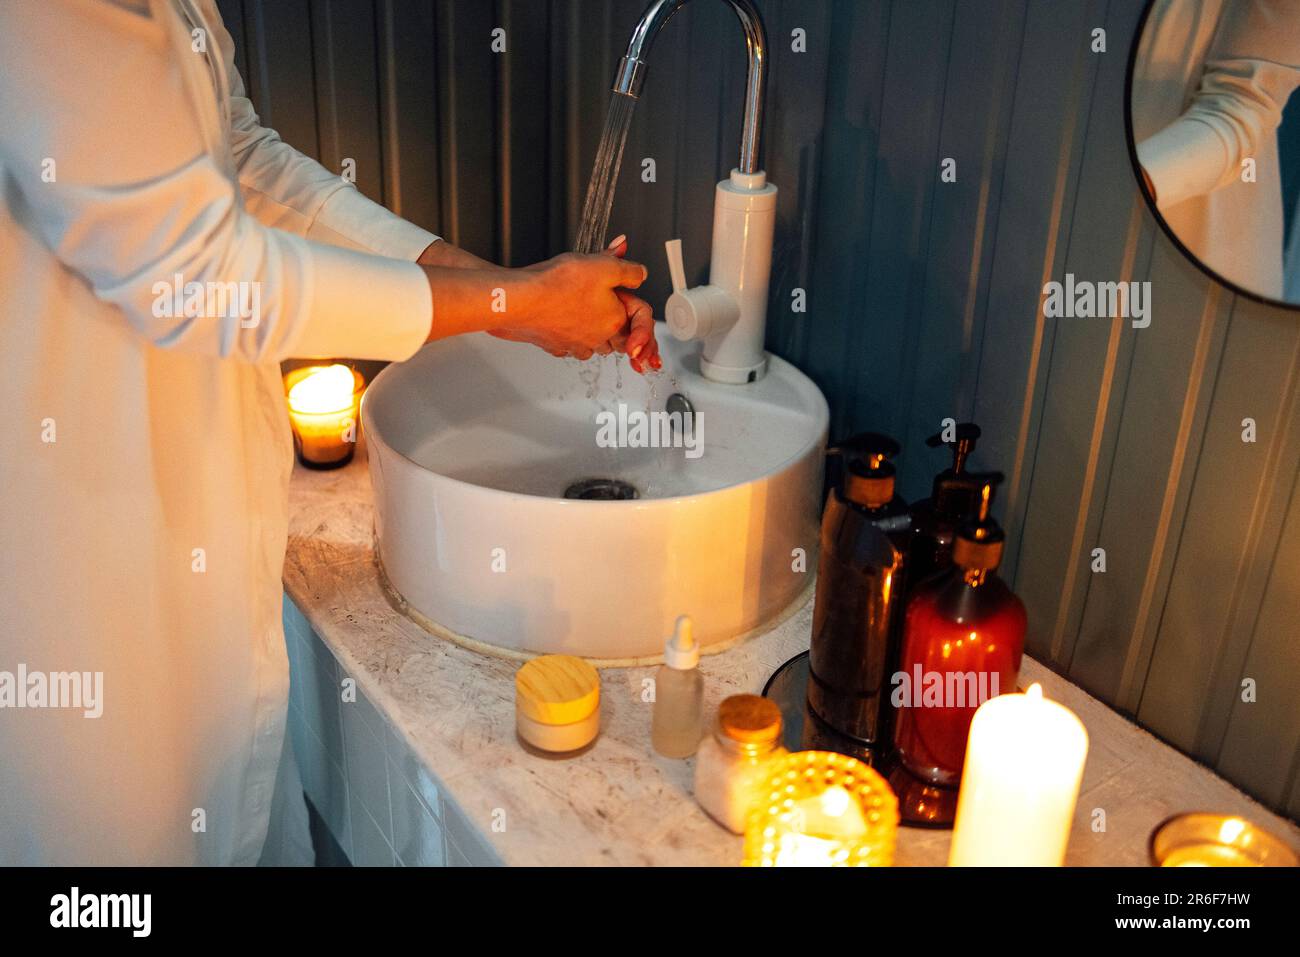 Ein junges Mädchen in weißen Kleidern wäscht sich die Hände unter fließendem Wasser über dem Waschbecken. Kosmetik und Reinigungsmittel, angezündete Duftkerzen auf einem Marmortisch. Stockfoto